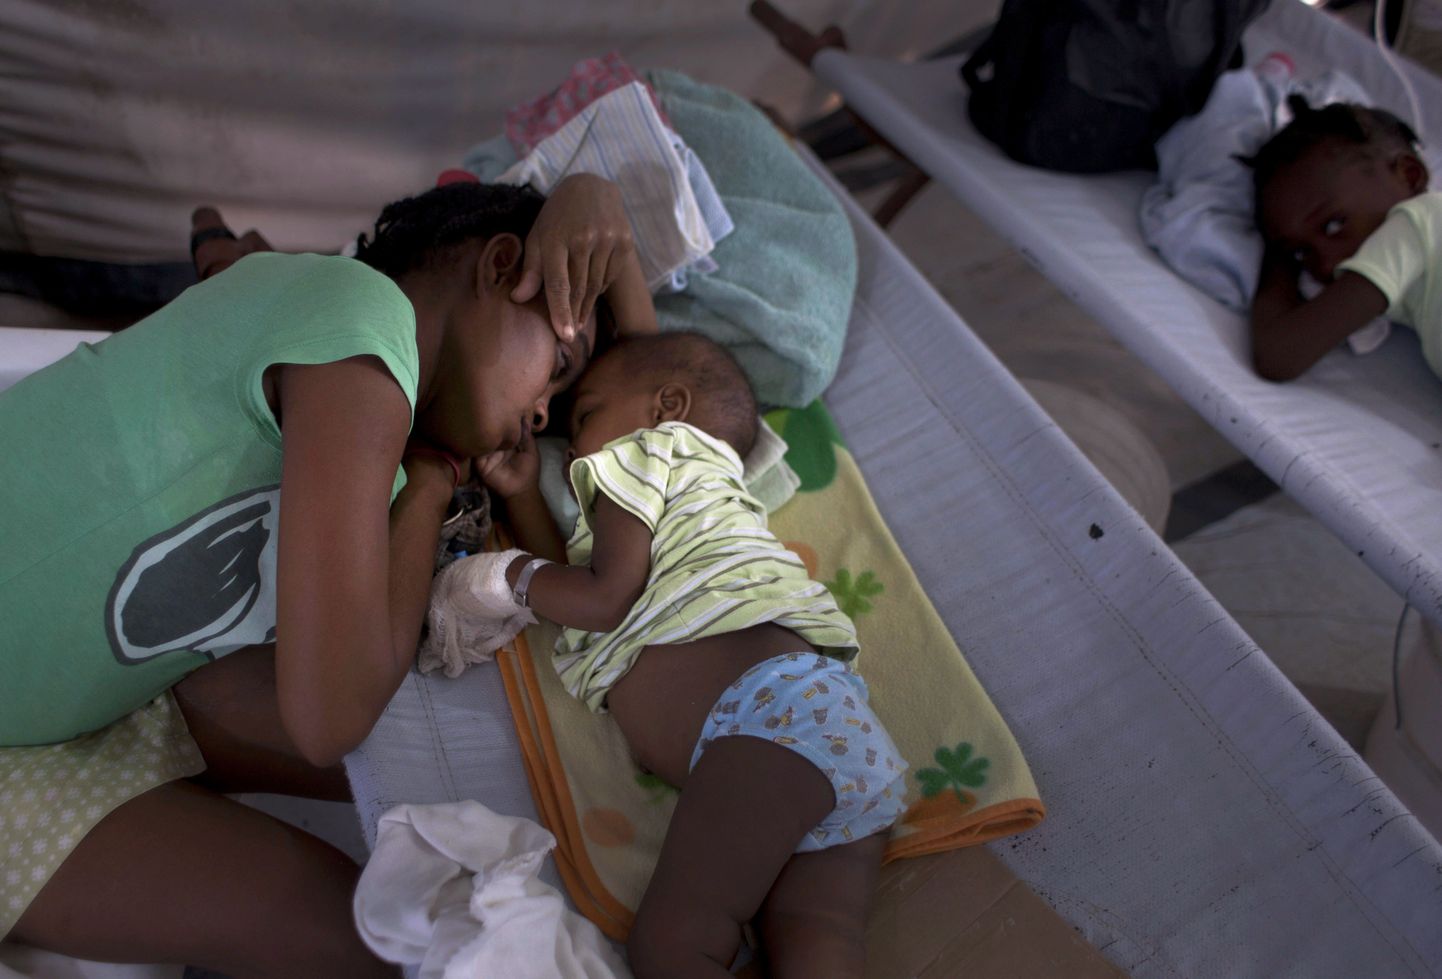 Haiti naine oma koolerat põdeva poja kõrval Port-au-Prince'i kliinikus.